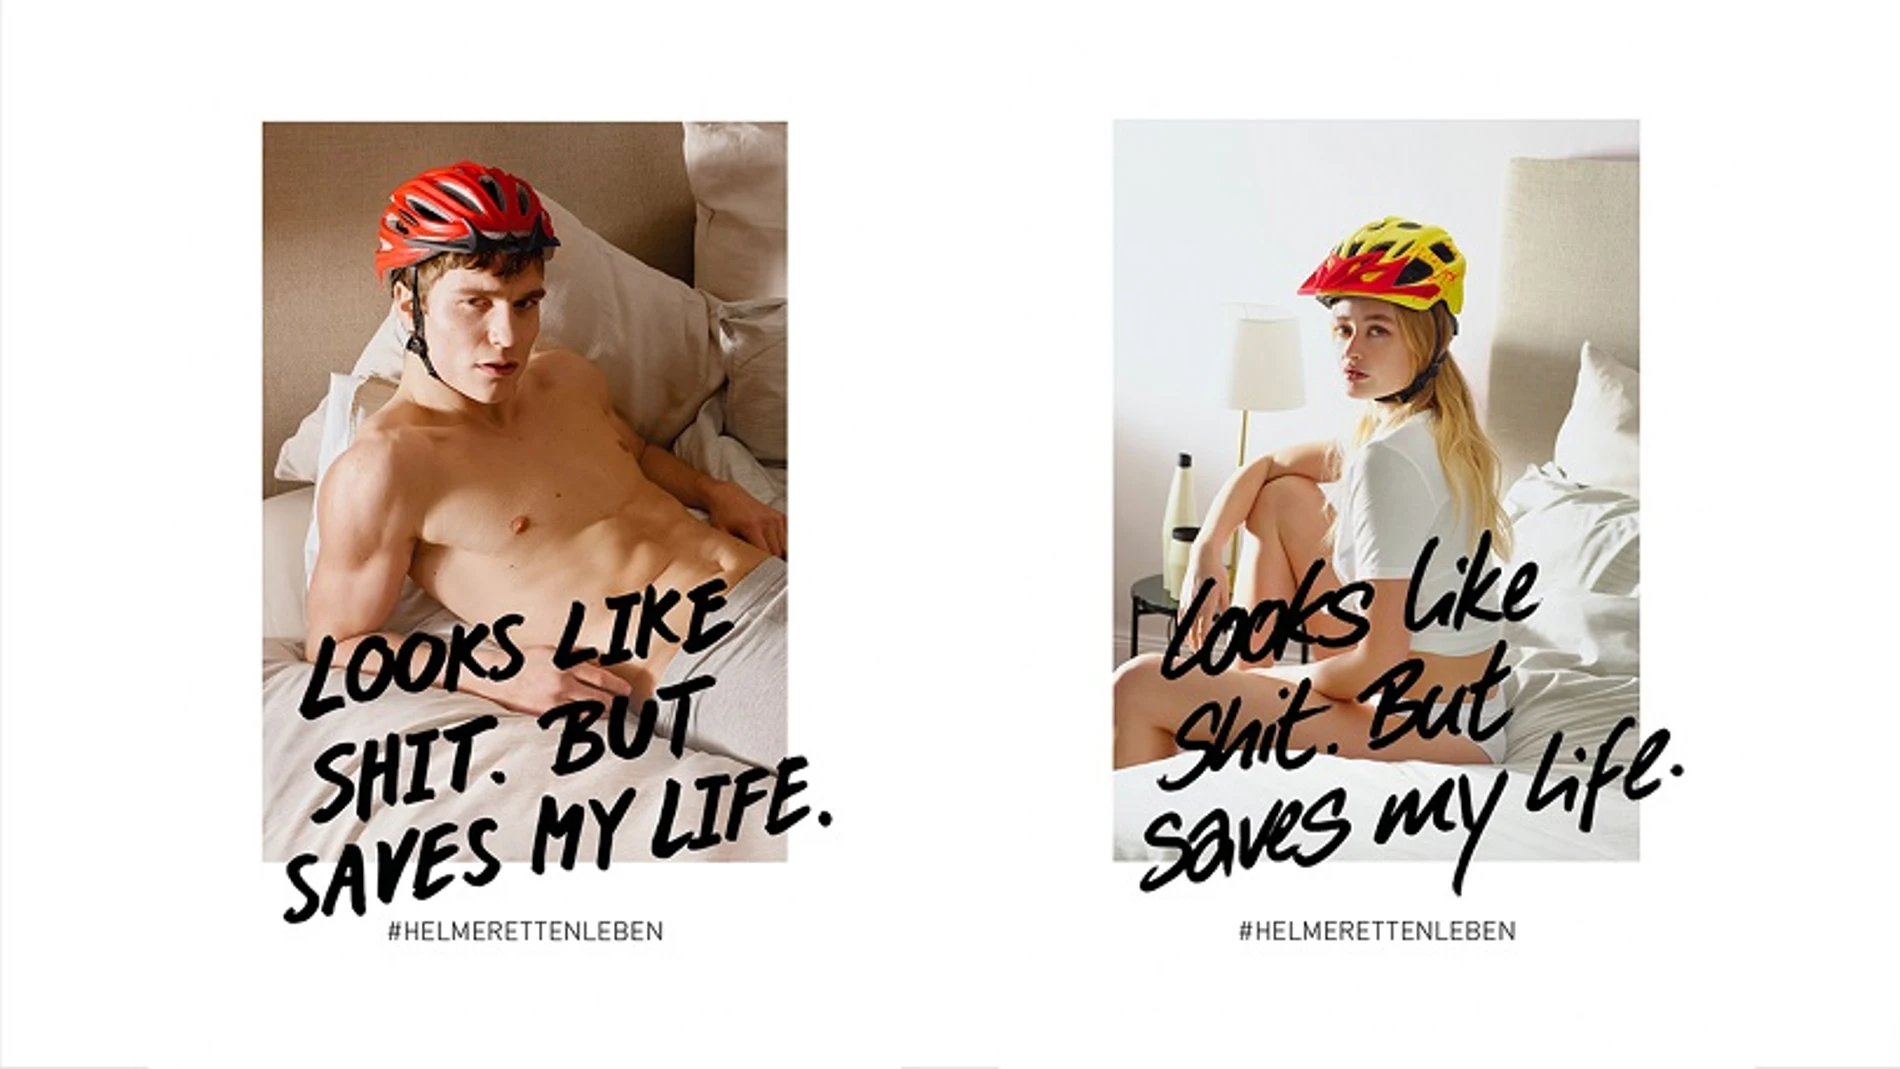 Carteles publicitarios de la iniciativa que promueve el uso del casco por ciclistas con modelos de ambos sexos en ropa interior